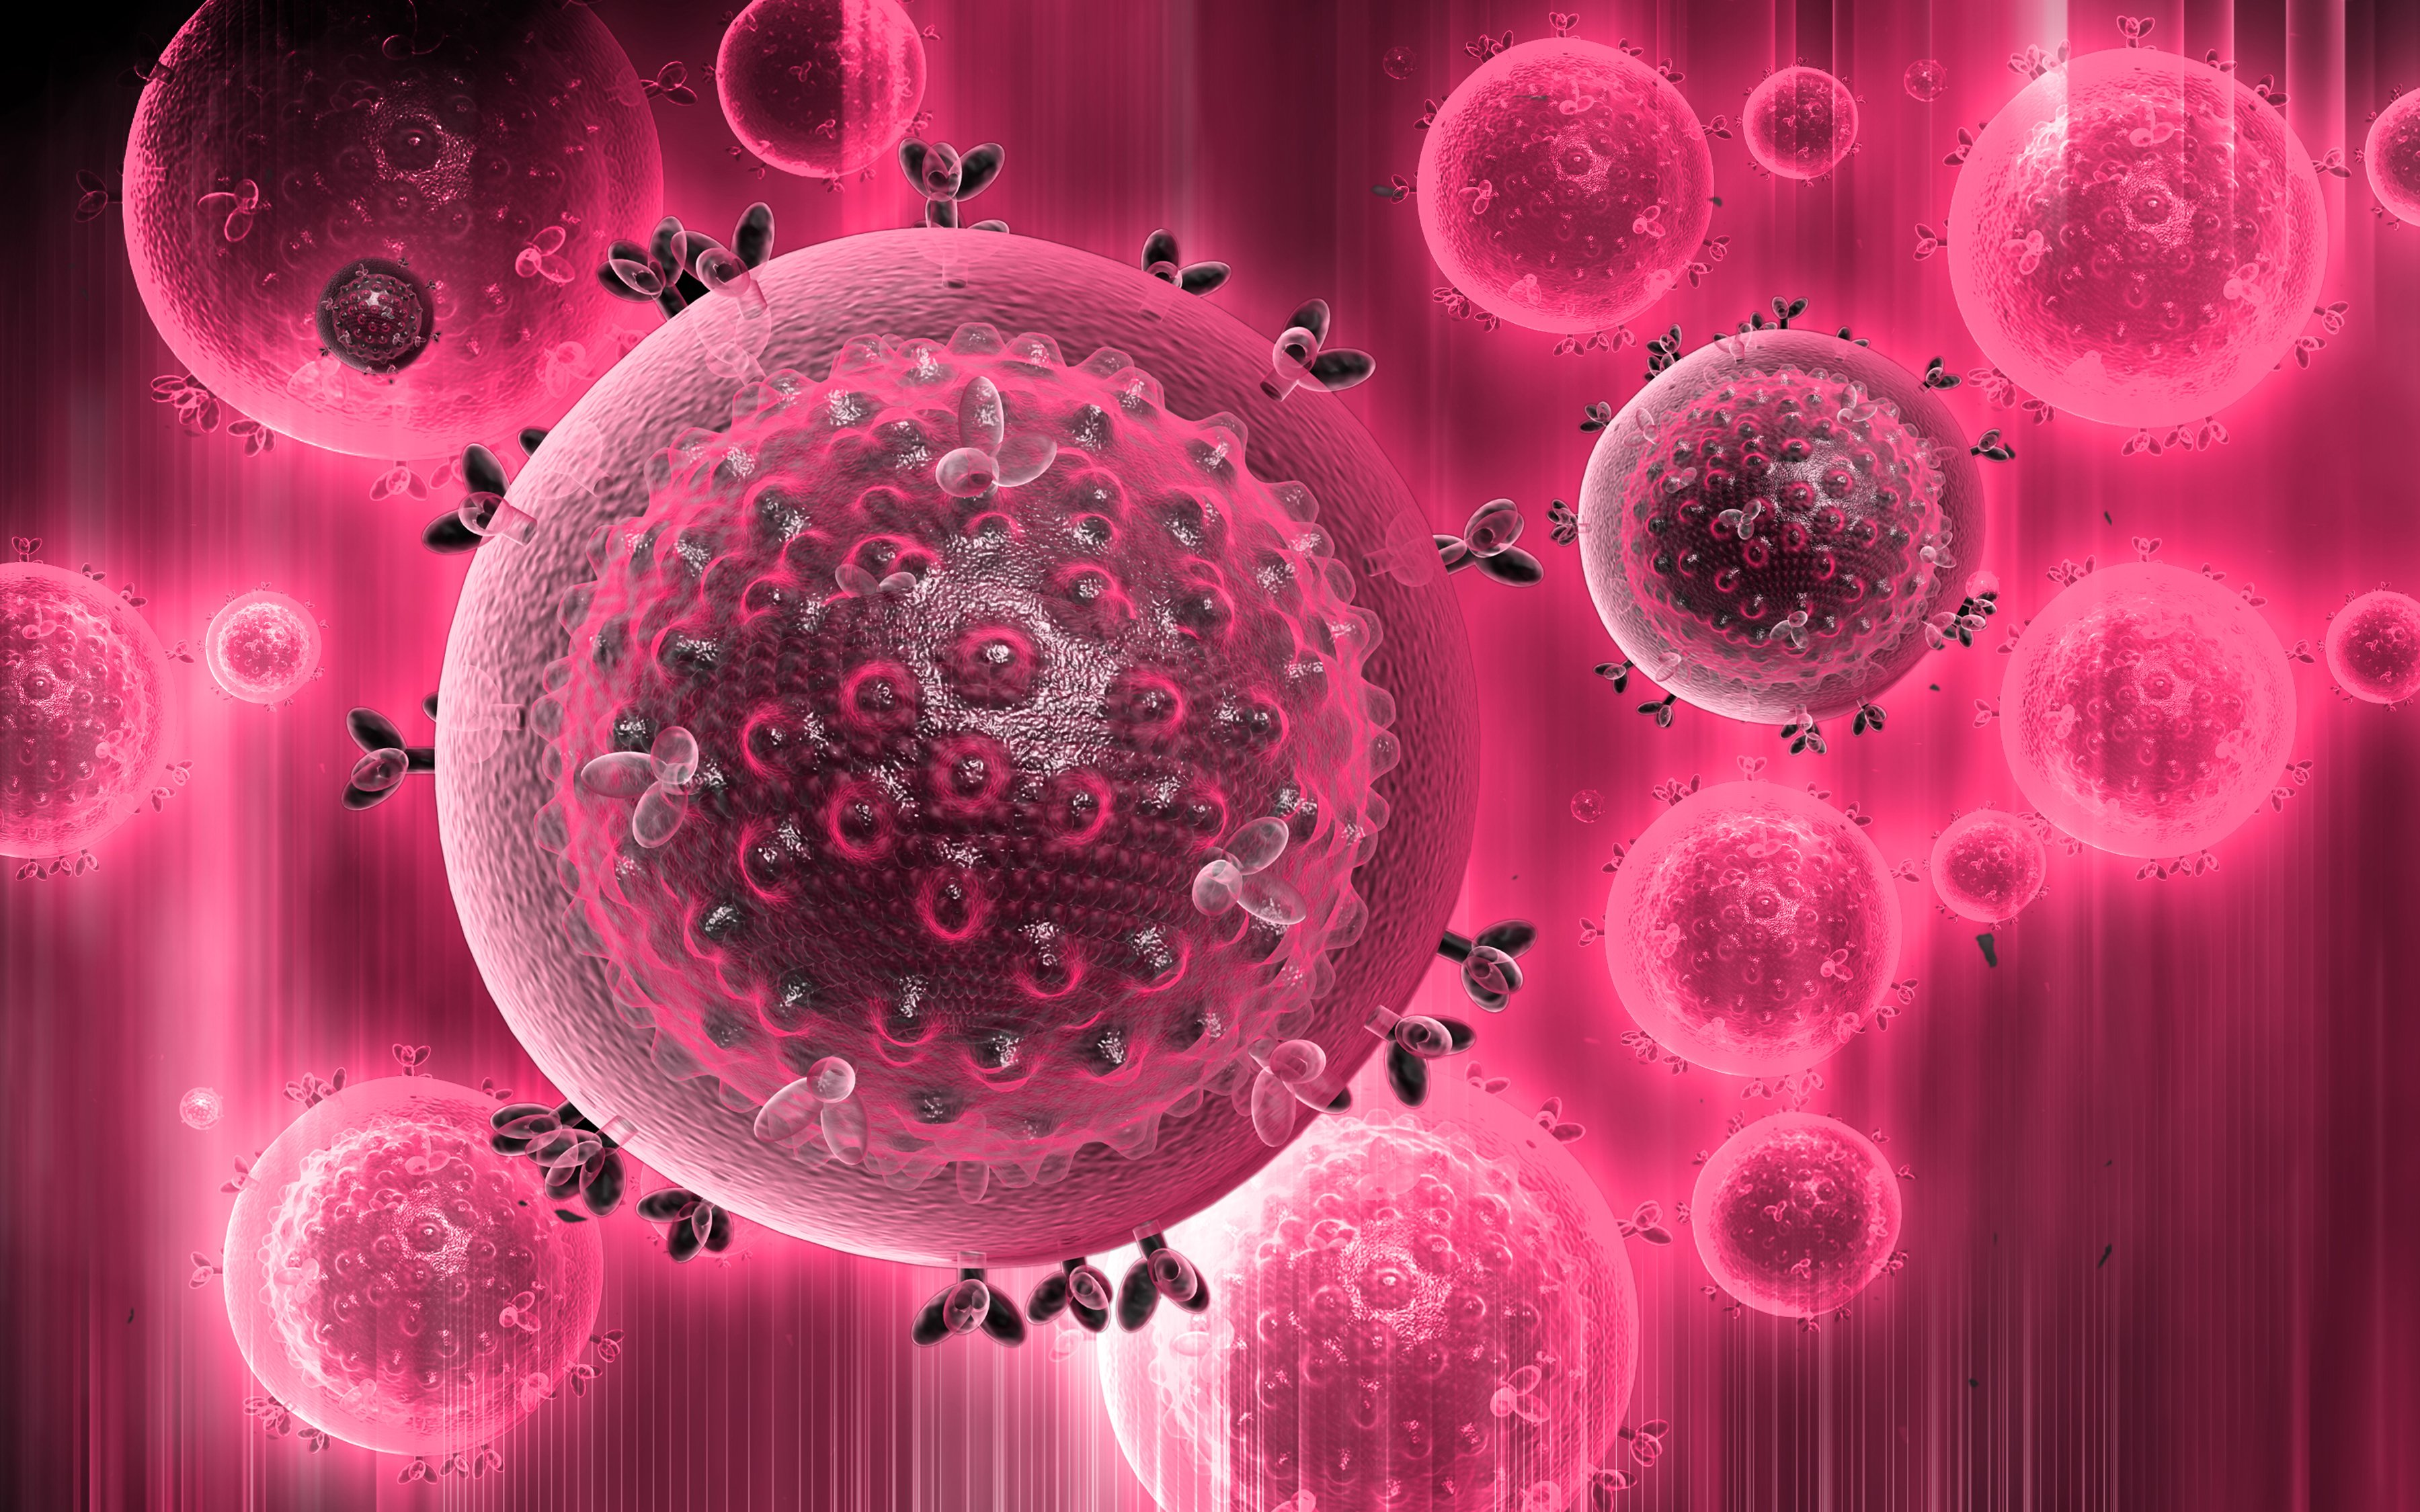 Human immunodeficiency. Вирус иммунодефицита человека (Human Immunodeficiency virus). ВИЧ поражает клетки иммунной системы. Стволовая клетка.